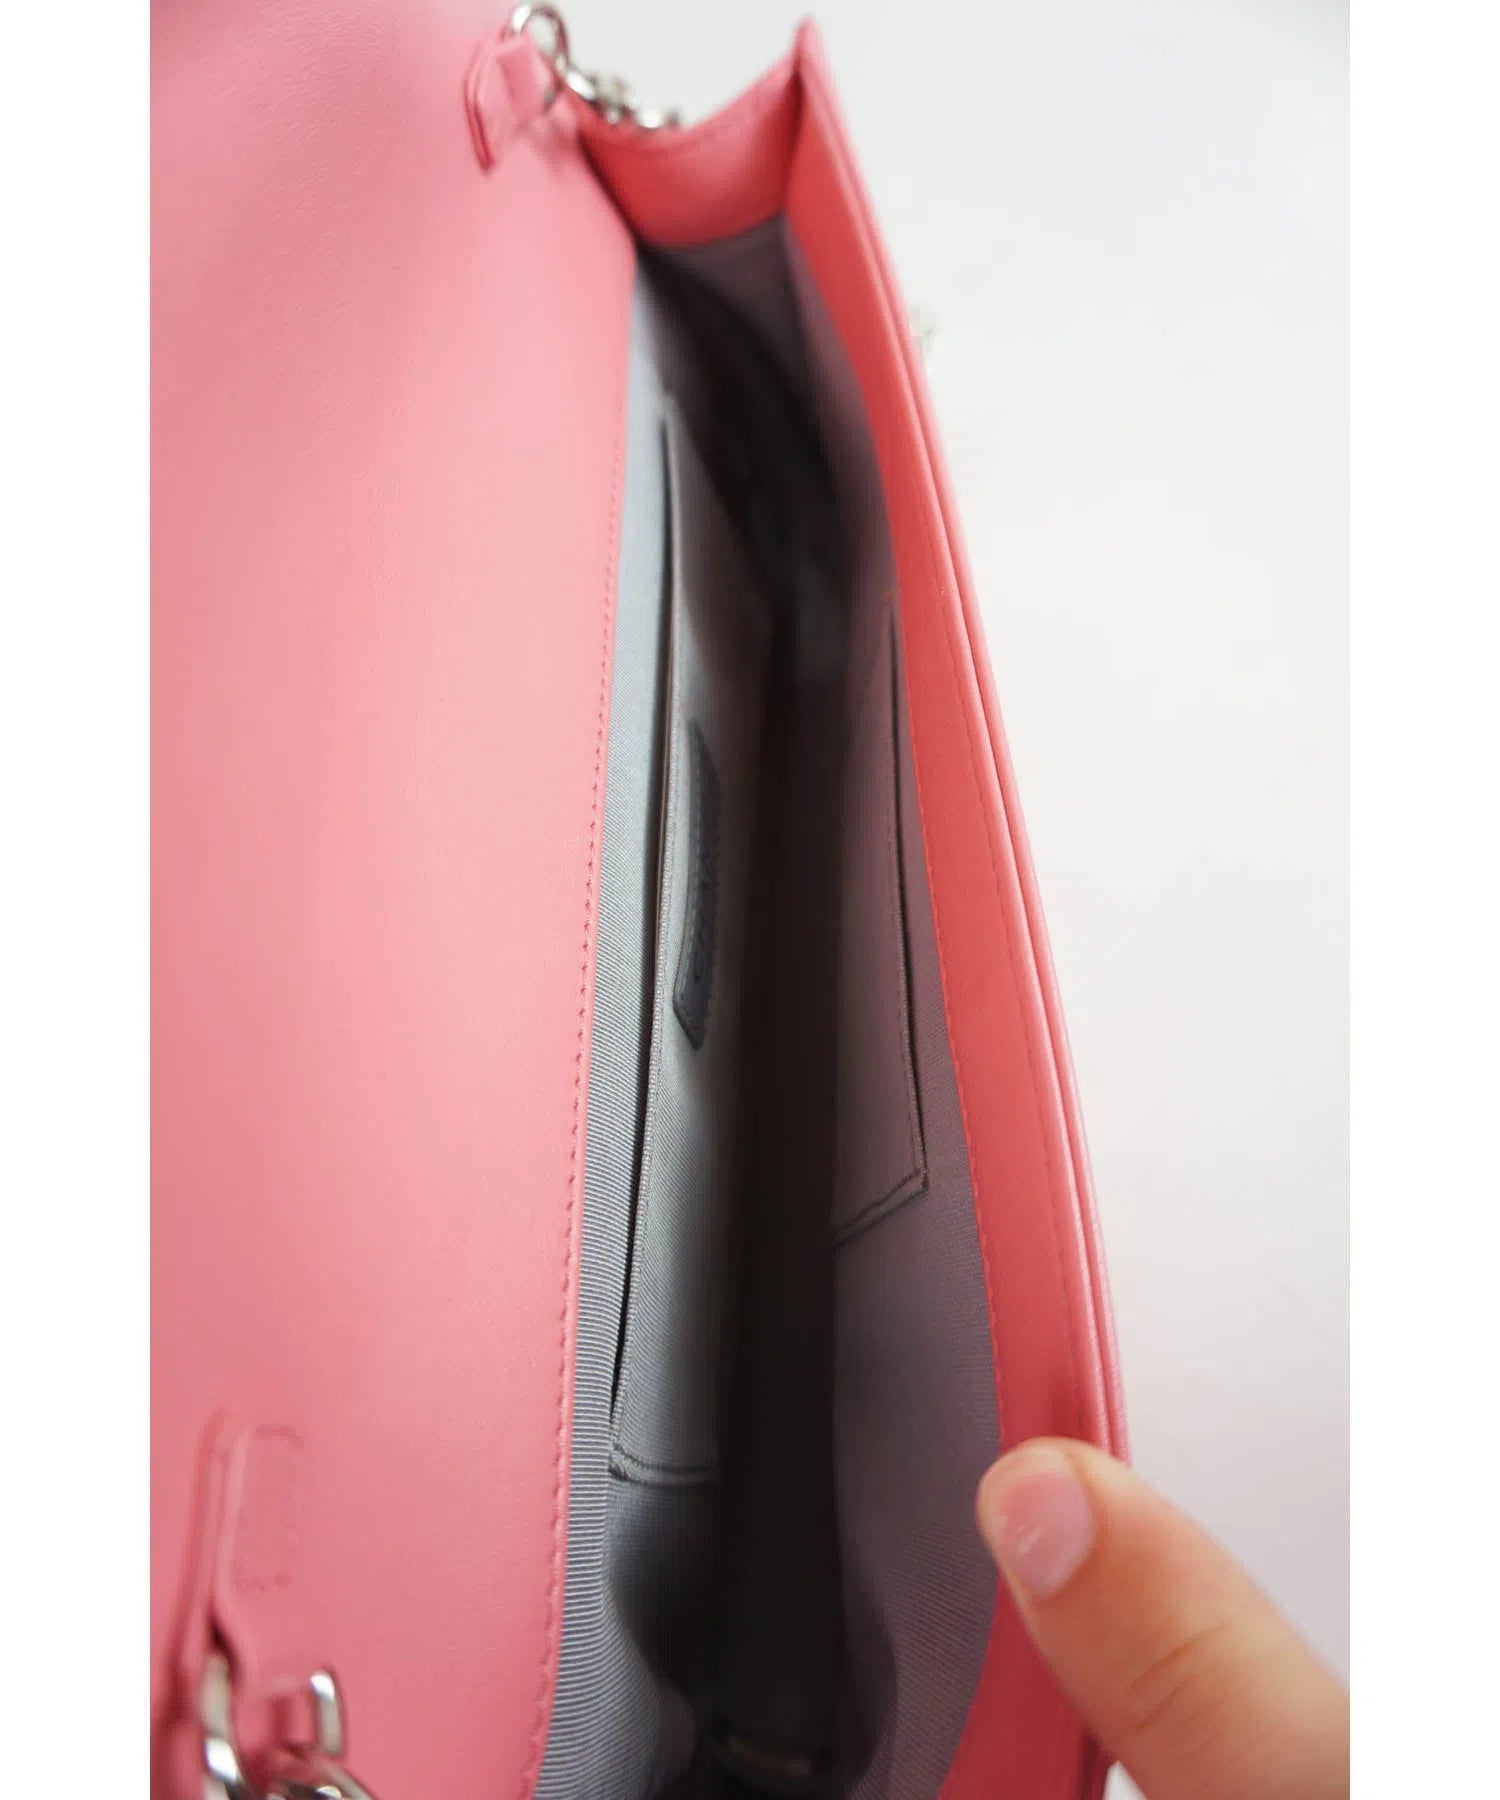 Chanel Medium Pink Chevron Pochette Boy Bag 2015-6